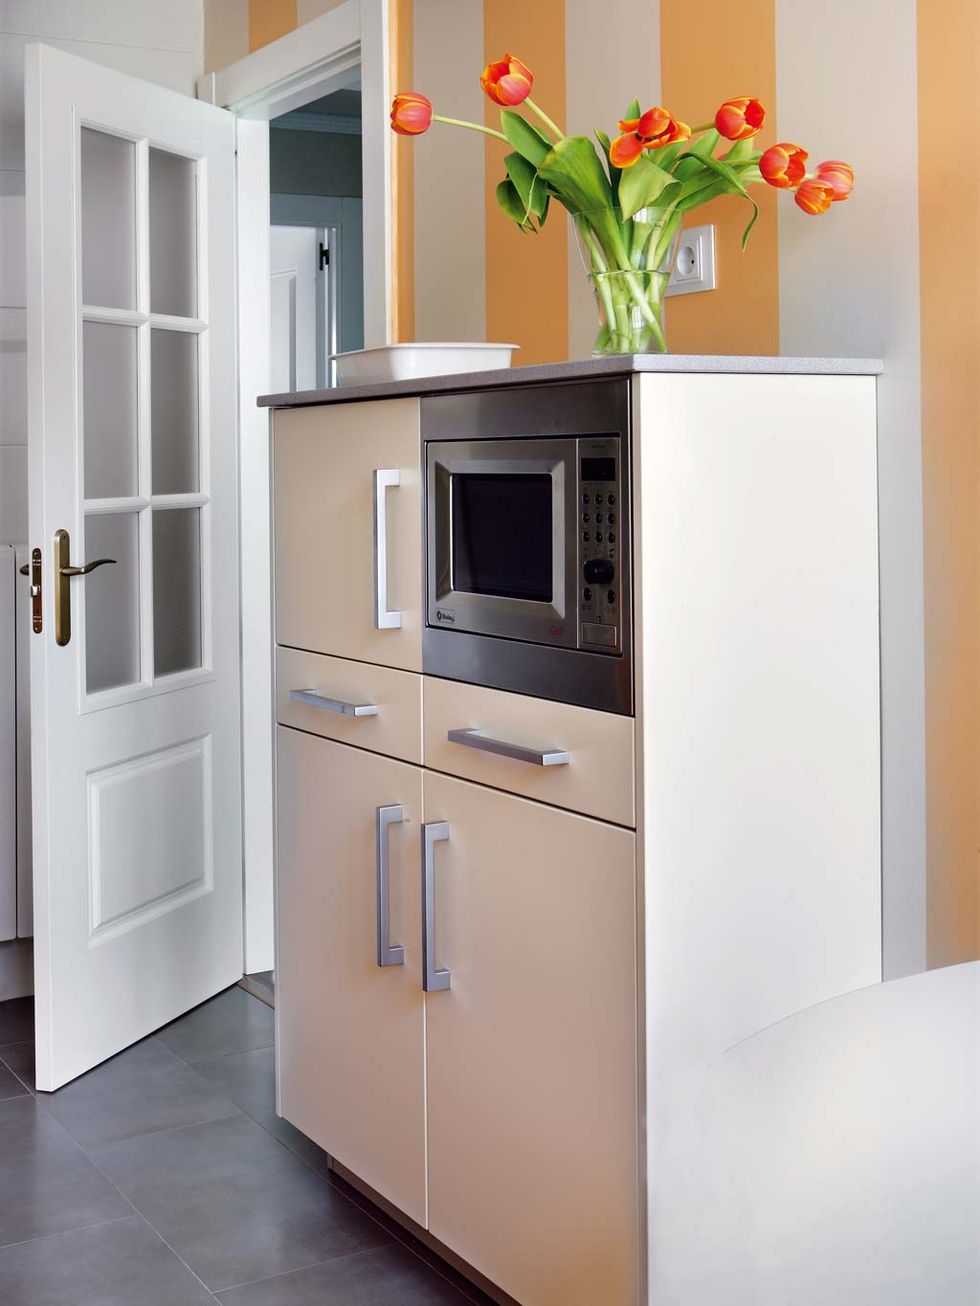 Ideas para colocar el horno y microondas en la cocina - Foto 1